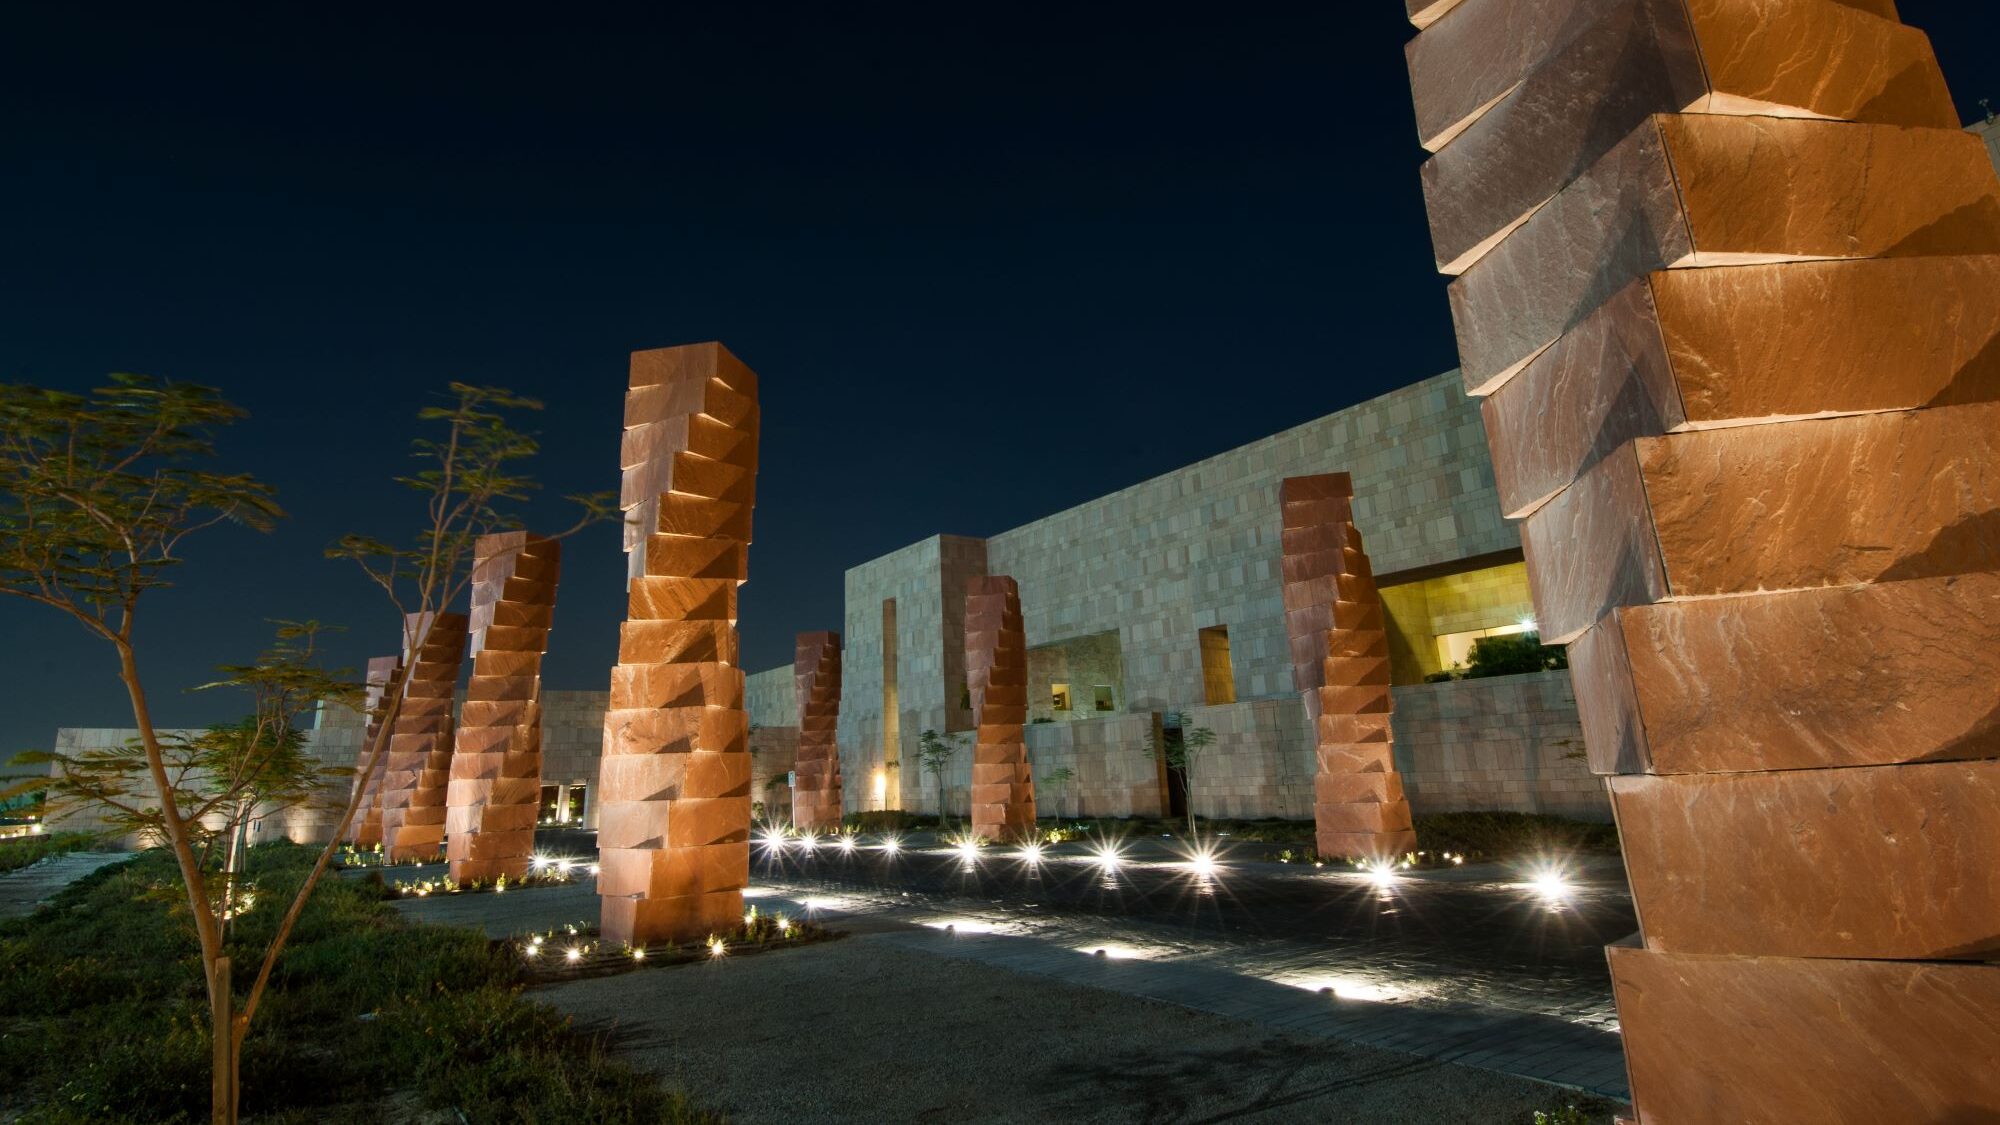 Pillars in front of GU-Q building